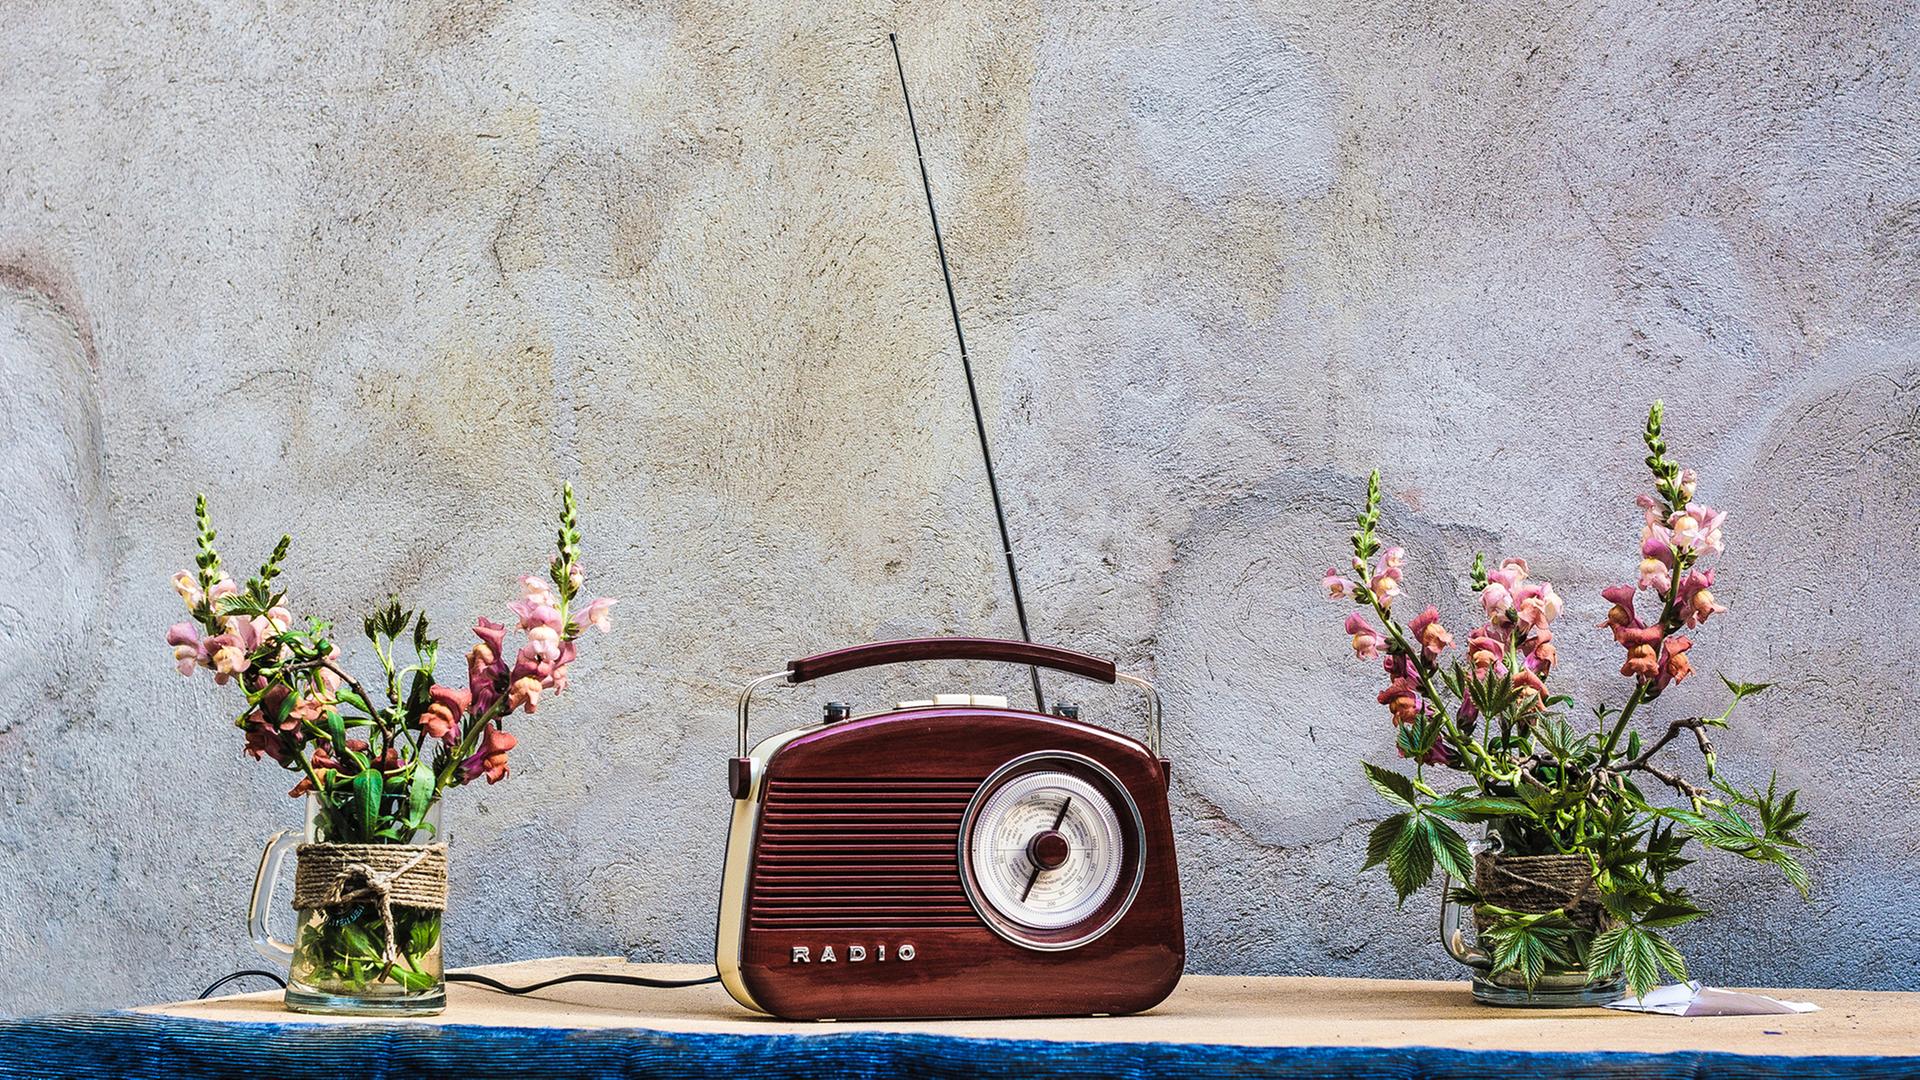 Auch wenn Radios längst nicht mehr so aussehen, fangen die Macher von „Angel Radio“ immer noch den Sound von Damals ein. Zu sehen: Ein rotbraunes, altes Handkofferradio mit ausgezogener Antenne in der Mitte eines Tisches. Daneben jeweils eine Blumenvase mit Löwenmäulchen. 